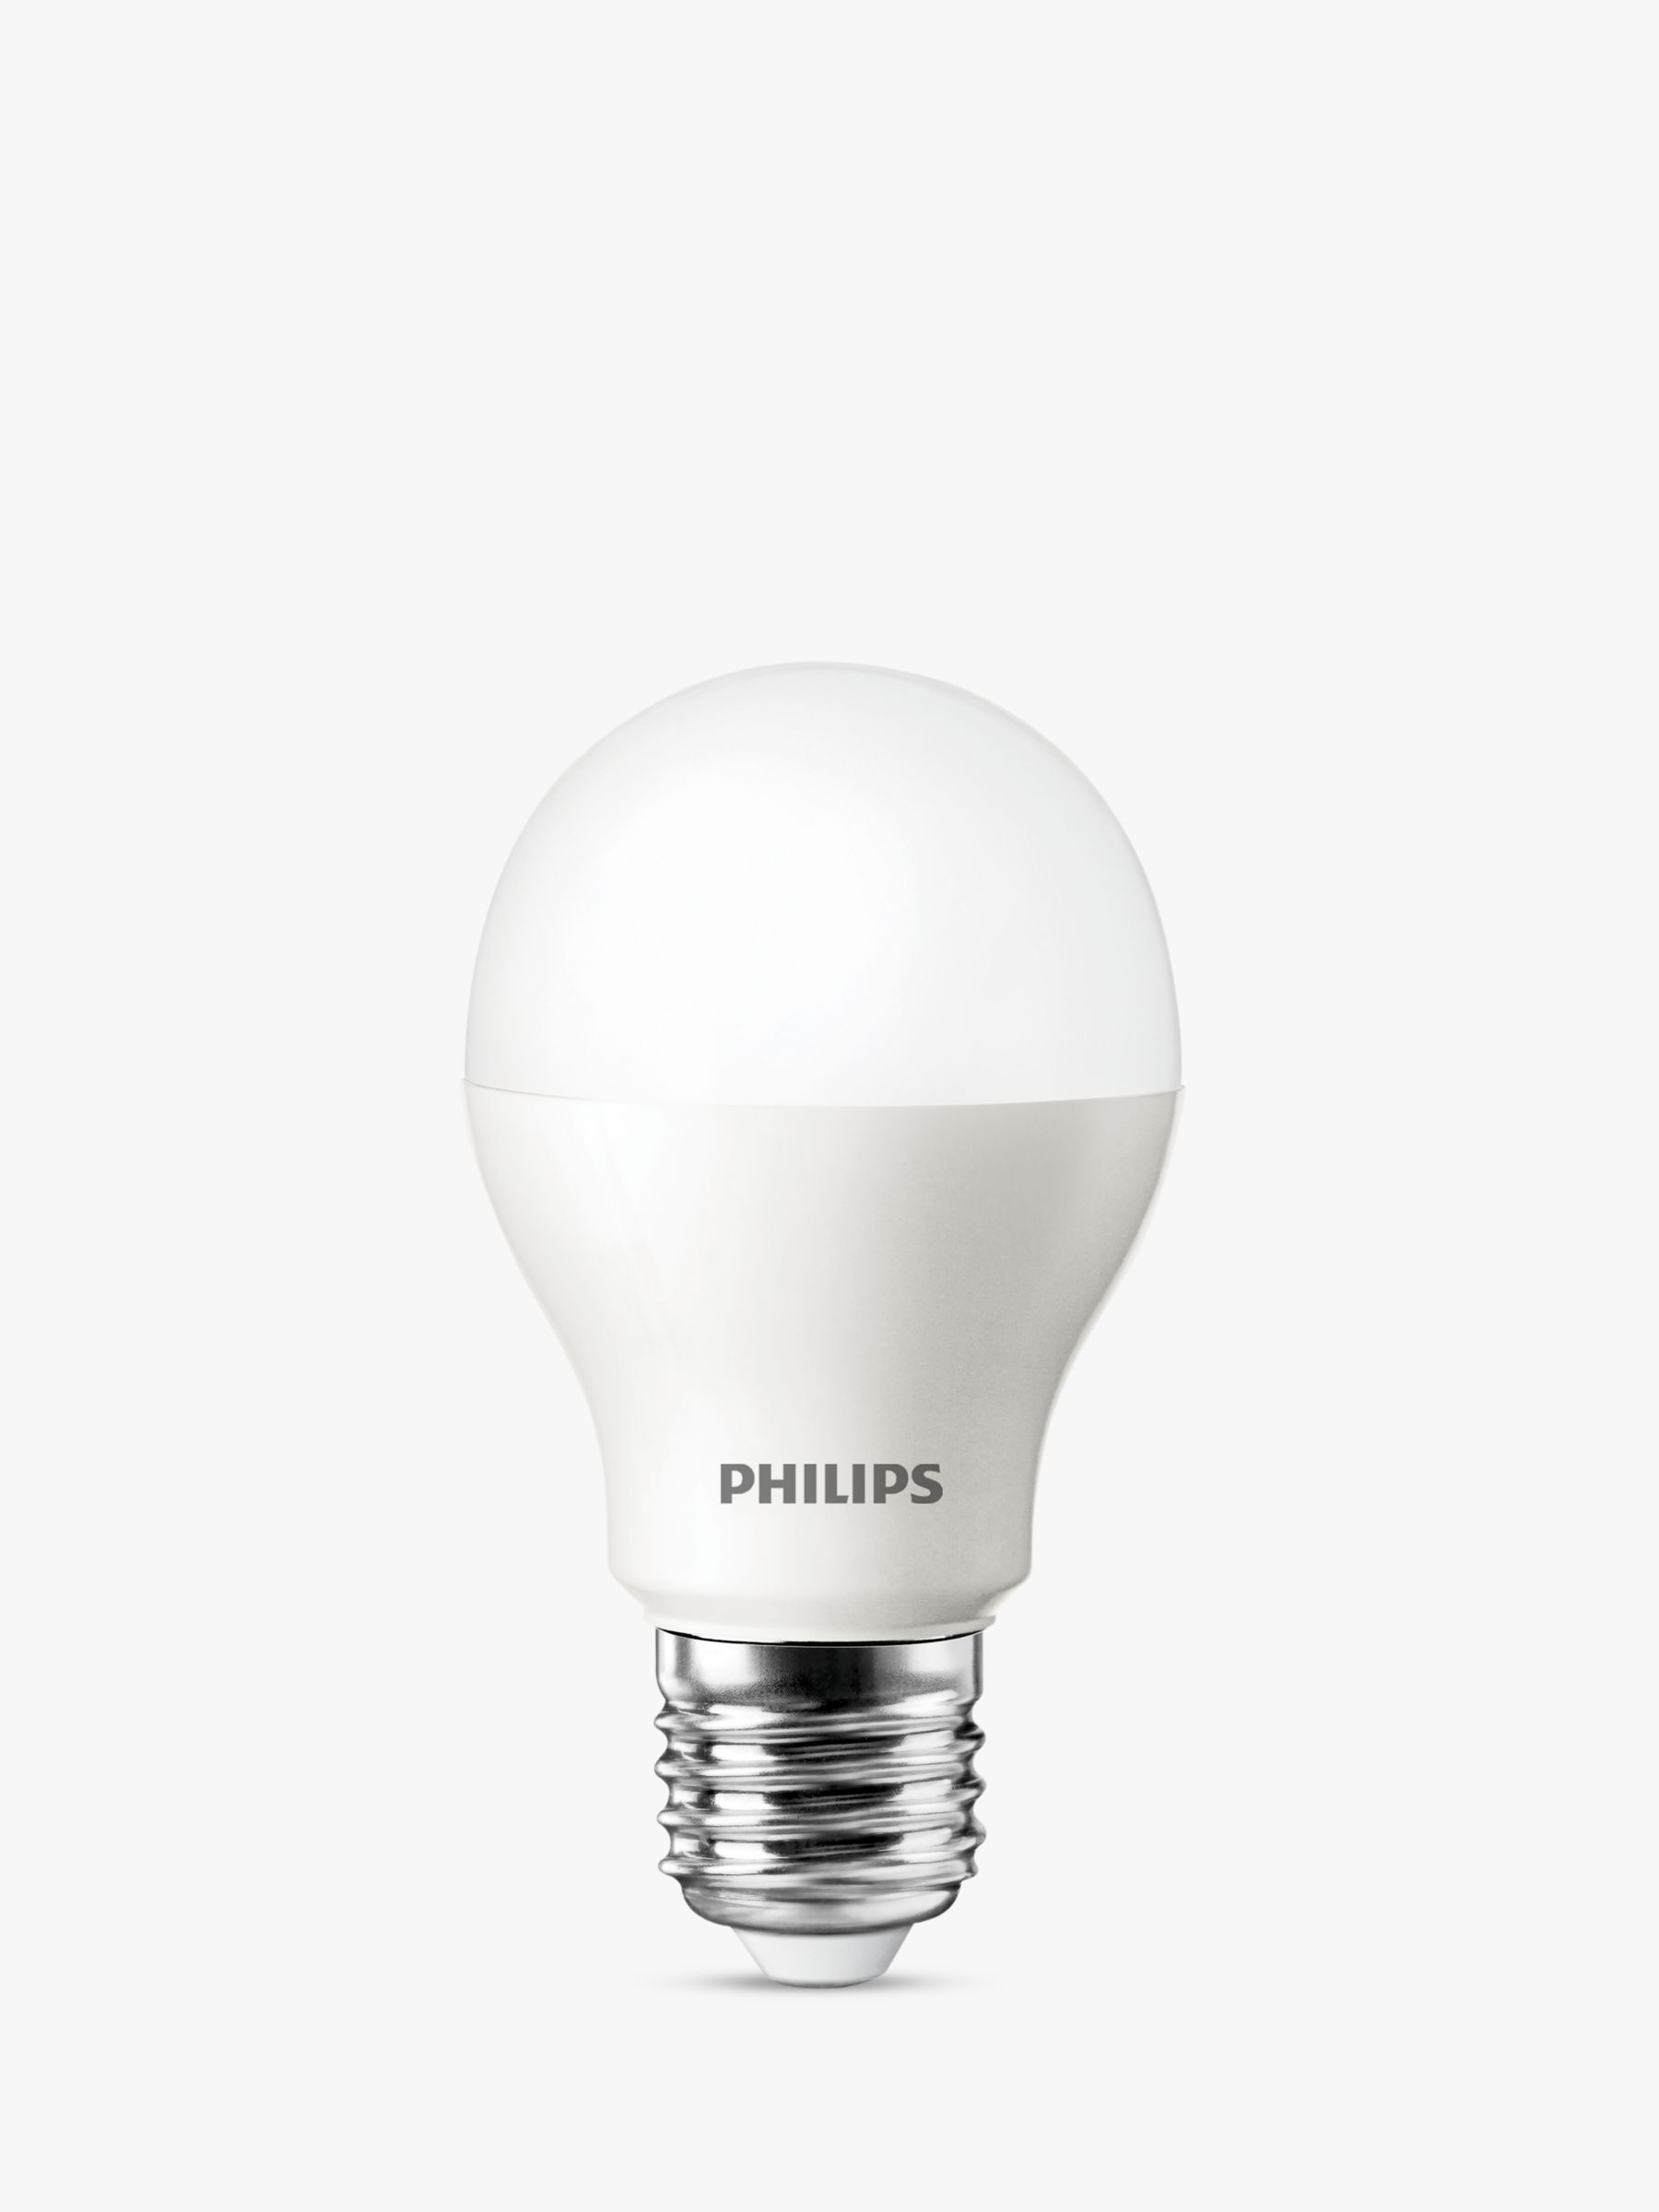 Philips 5.5W ES Classic Light Bulb,